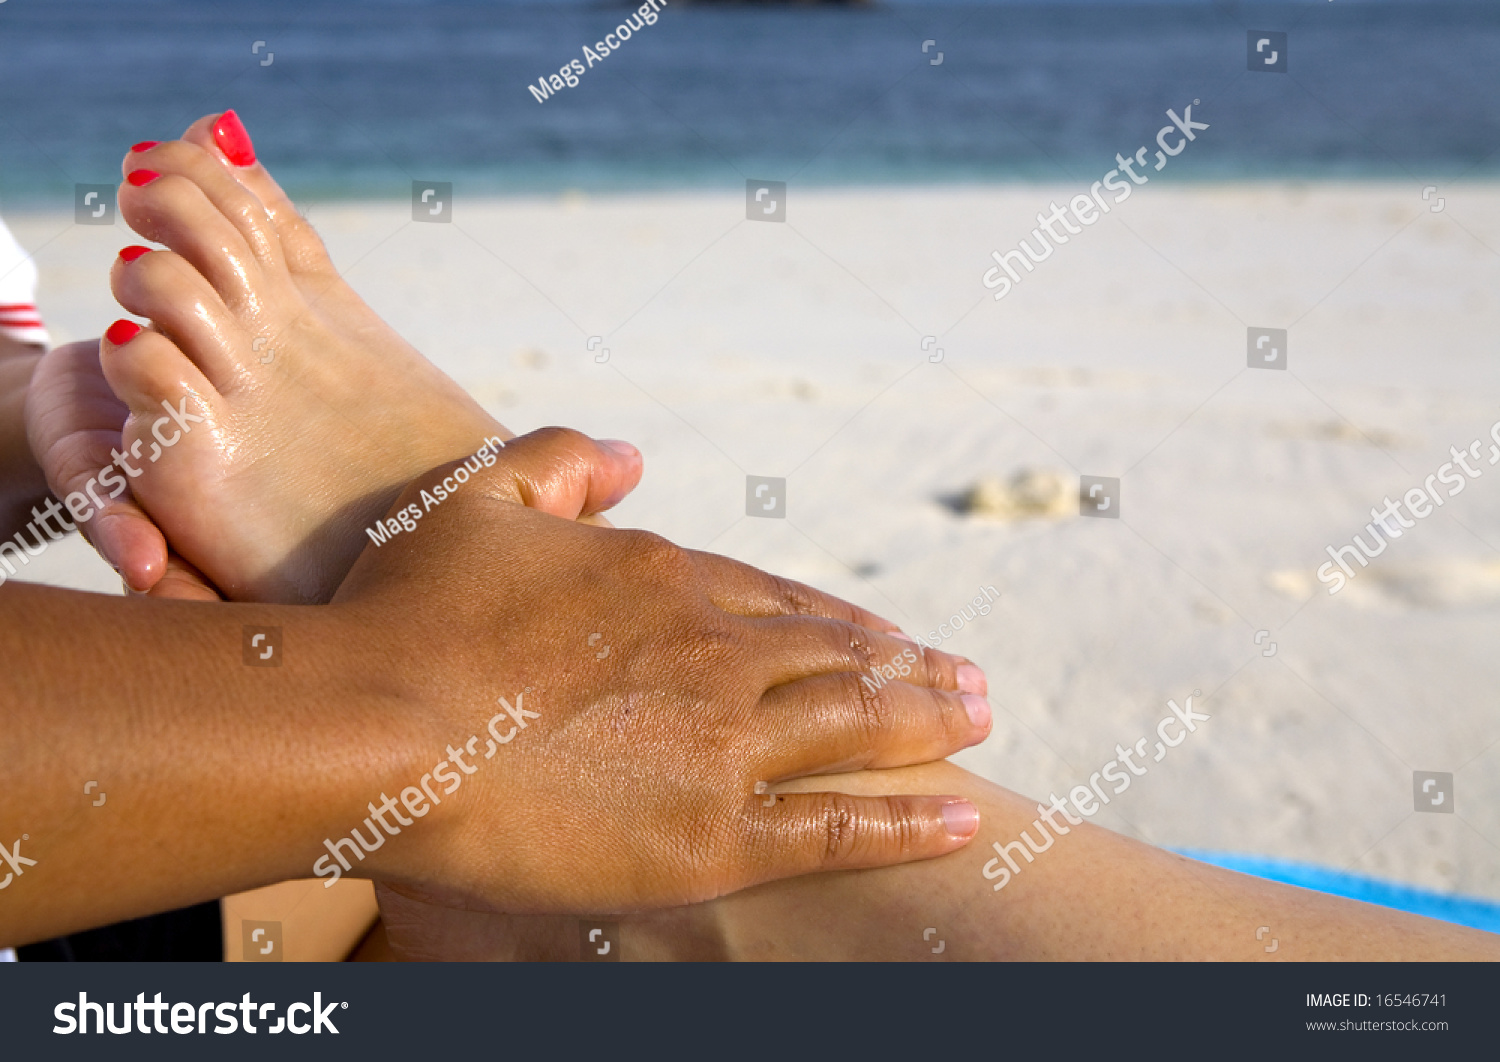 Edit Photos Free Online A Foot Massage Shutterstock Editor